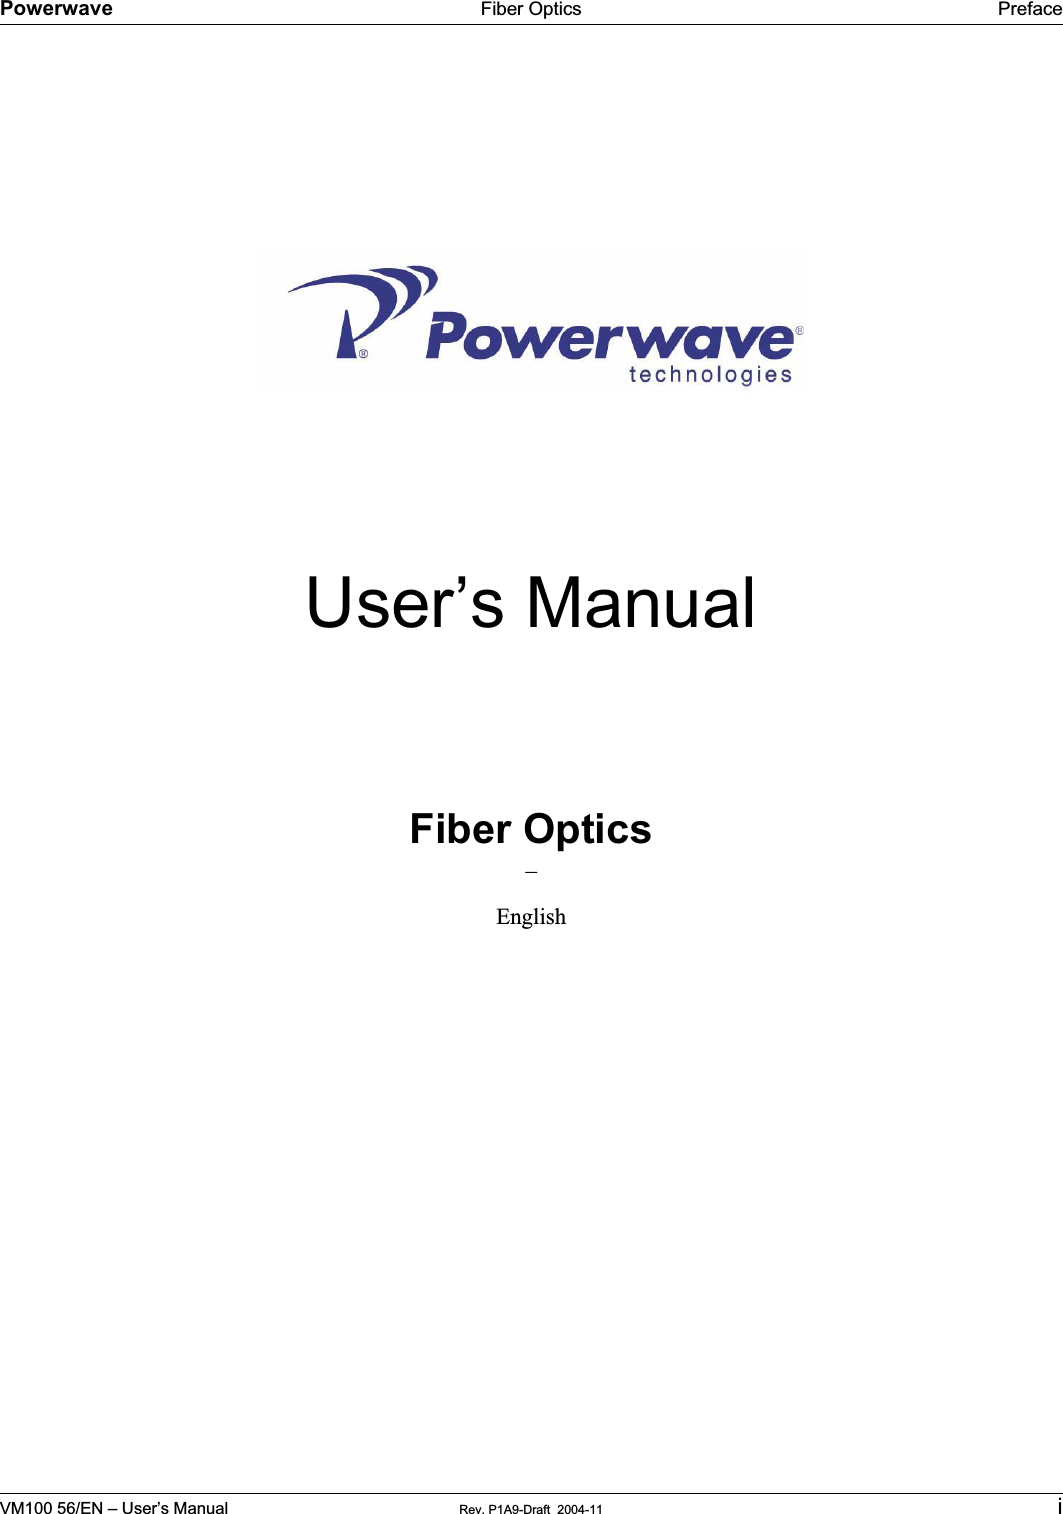 Powerwave Fiber Optics PrefaceVM100 56/EN – User’s Manual Rev. P1A9-Draft  2004-11 iUser’s ManualFiber Optics–English